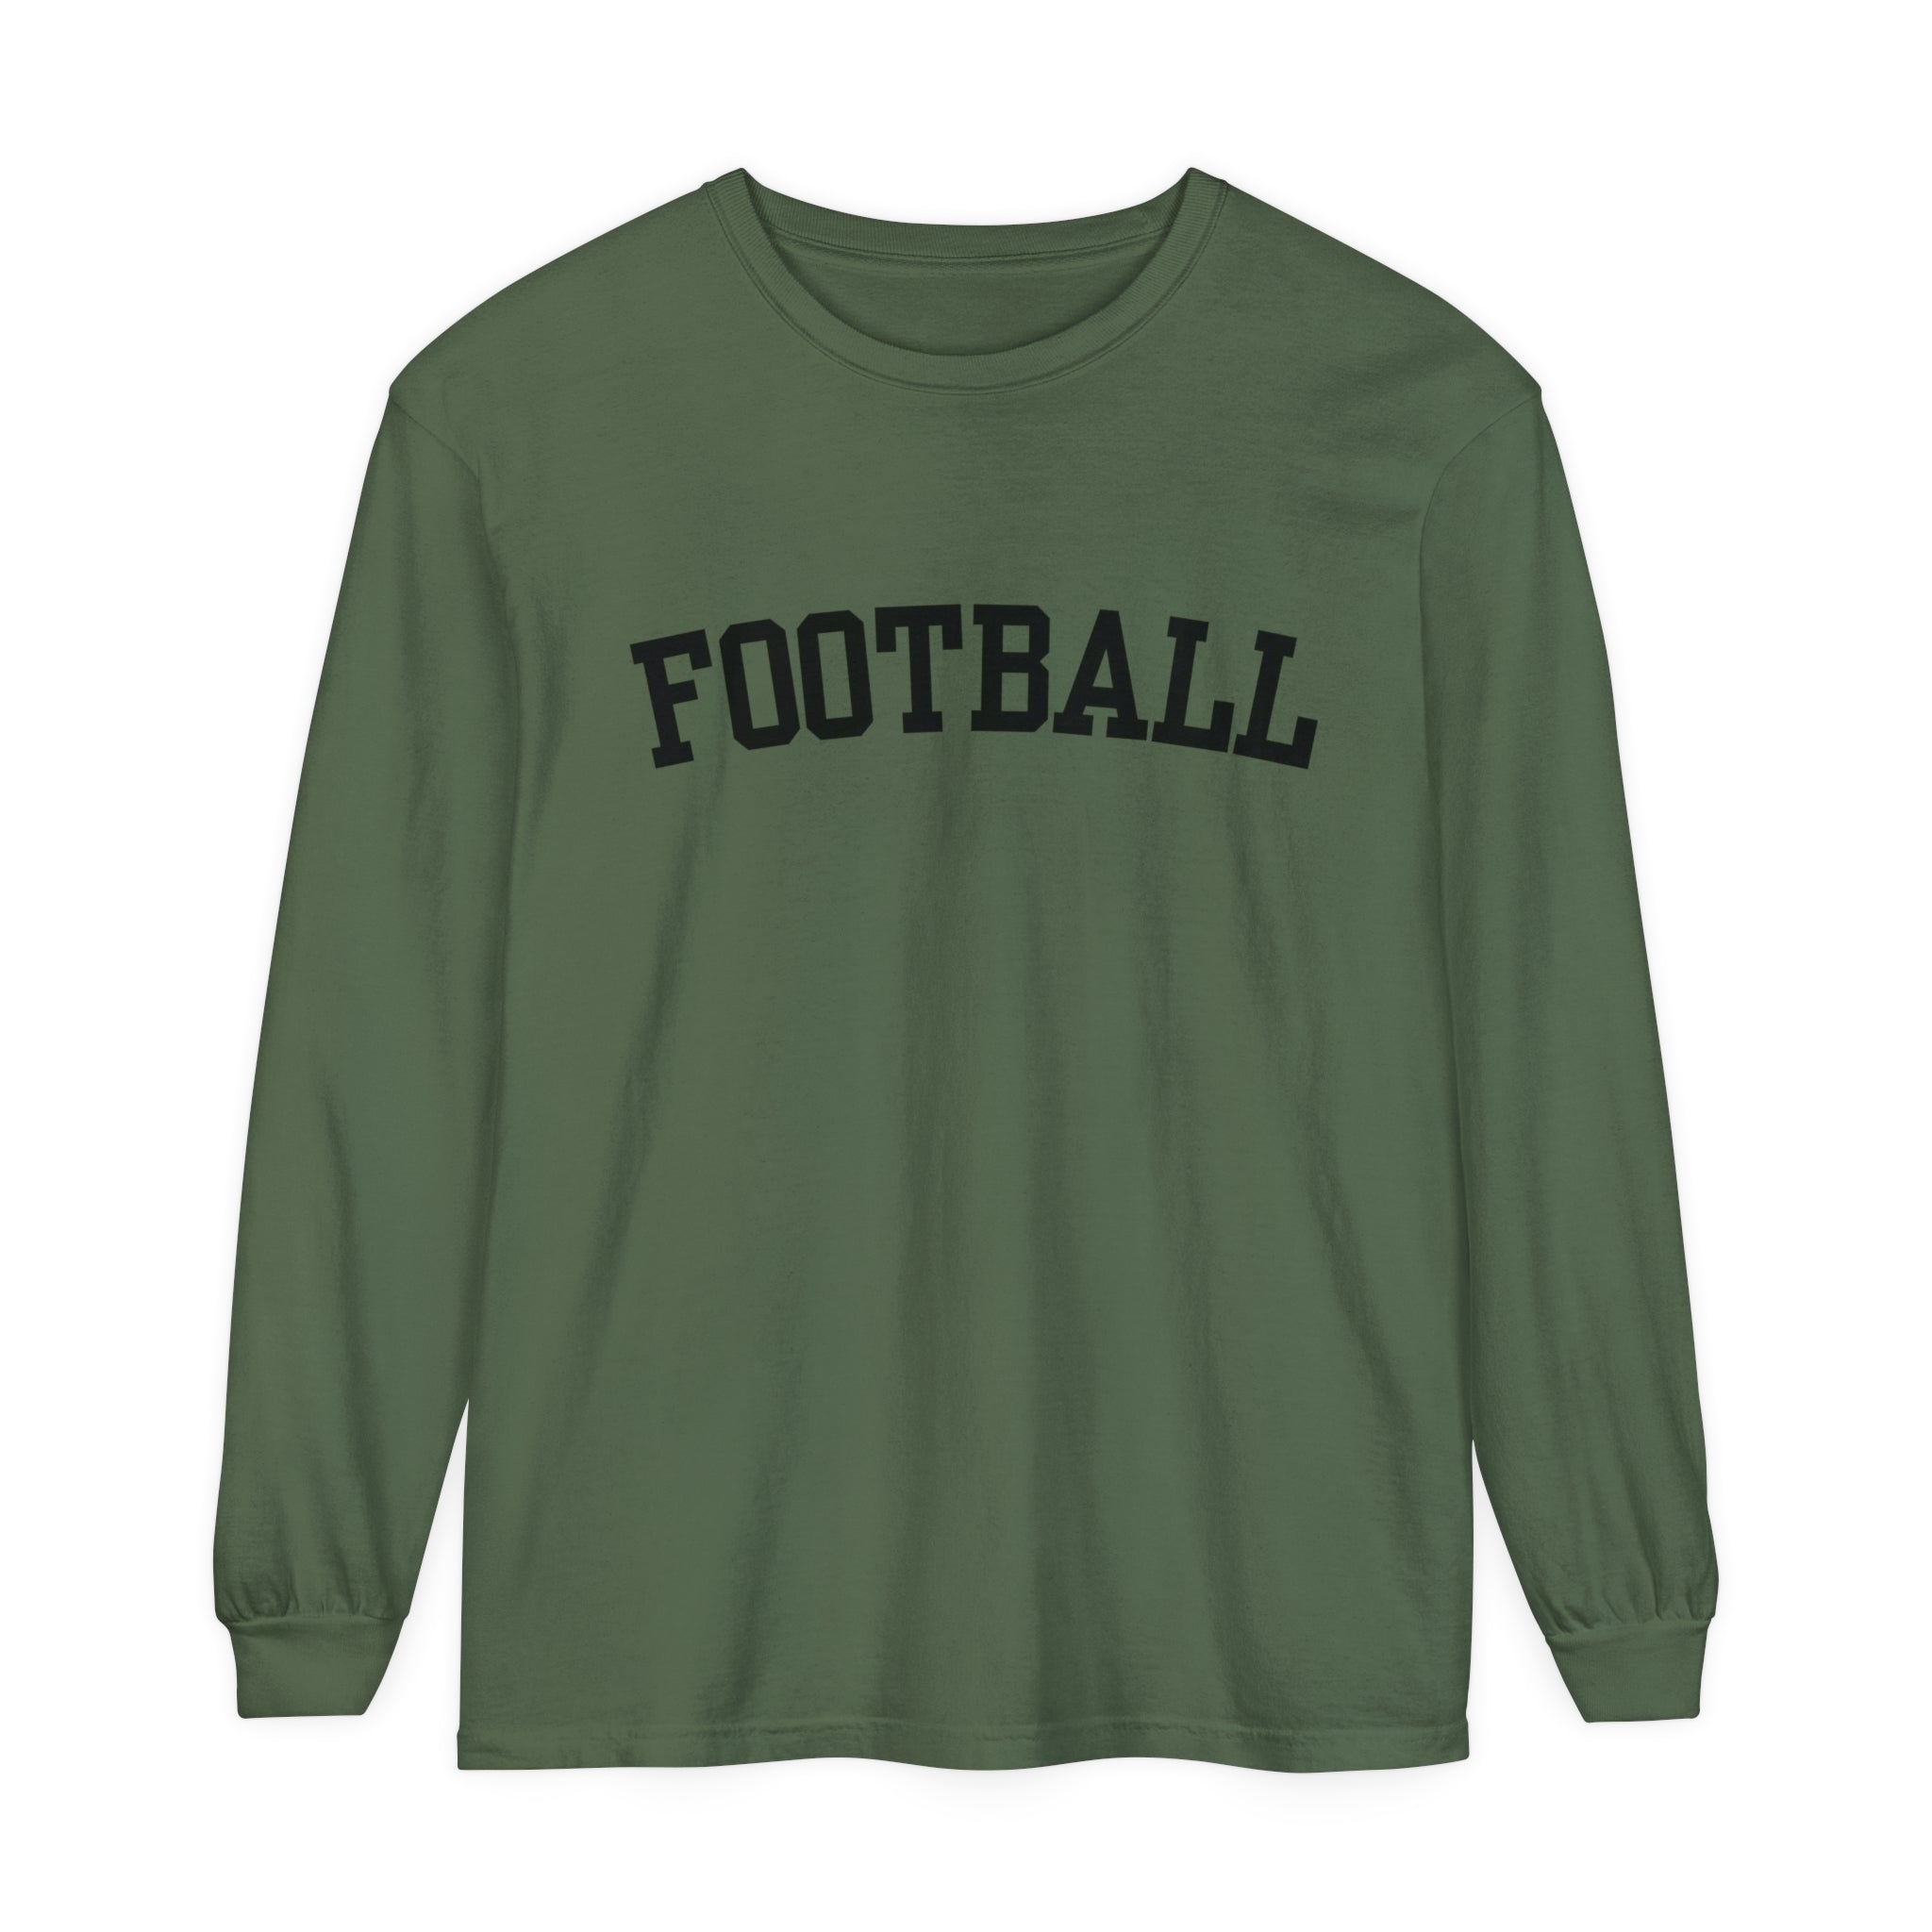 Football Unisex Long Sleeve T-Shirt Black Lettering